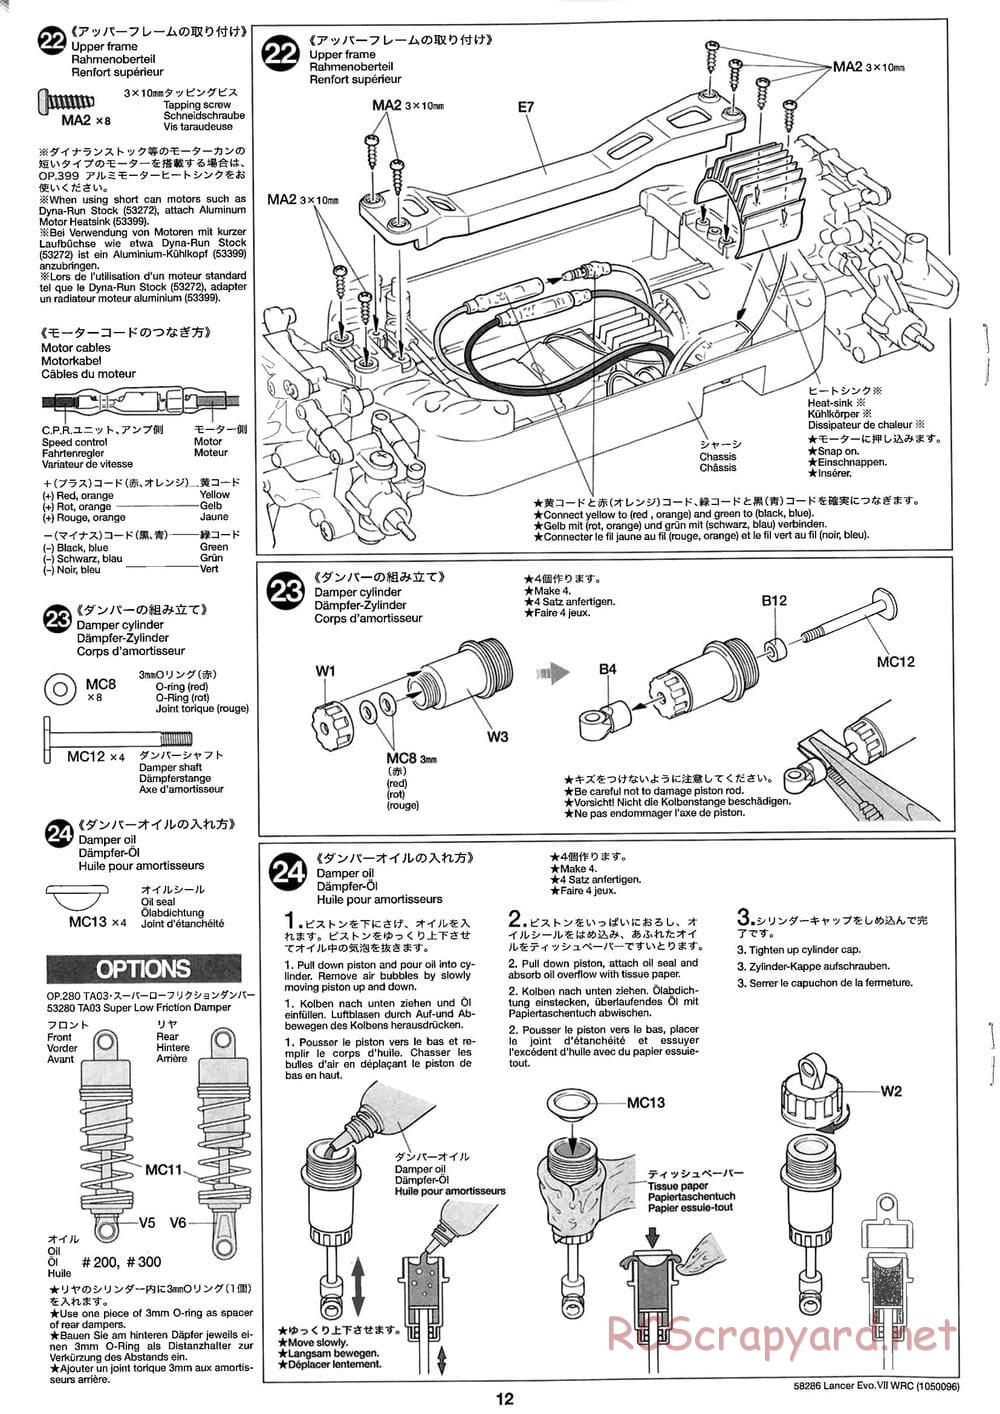 Tamiya - Mitsubishi Lancer Evolution VII WRC - TB-01 Chassis - Manual - Page 12